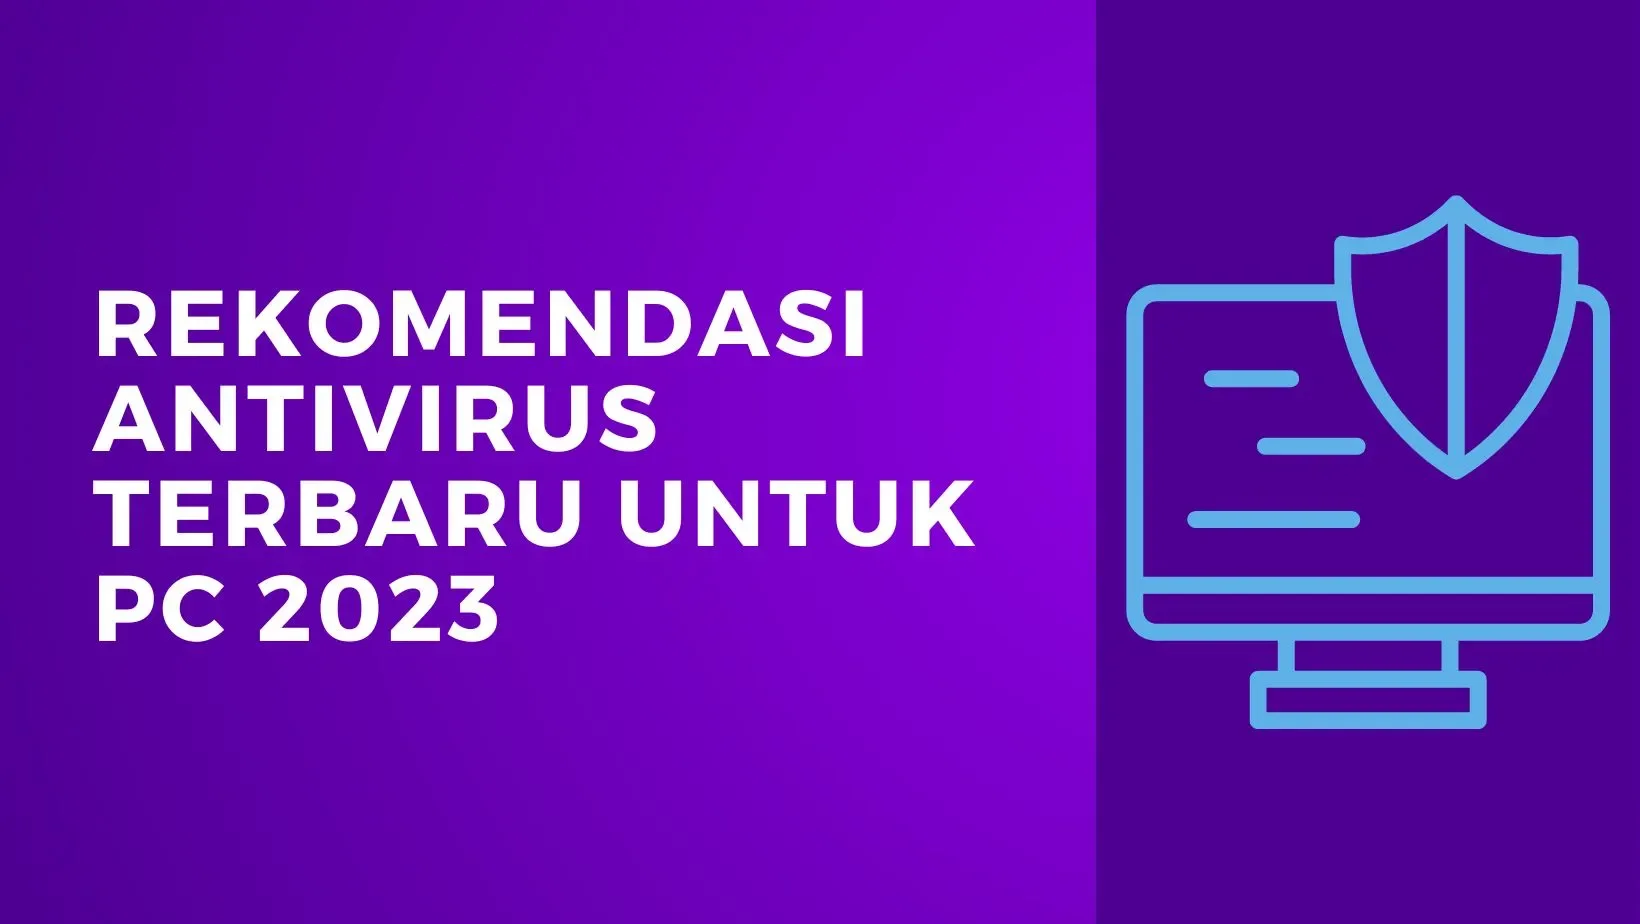 Rekomendasi Antivirus Terbaru untuk PC 2023